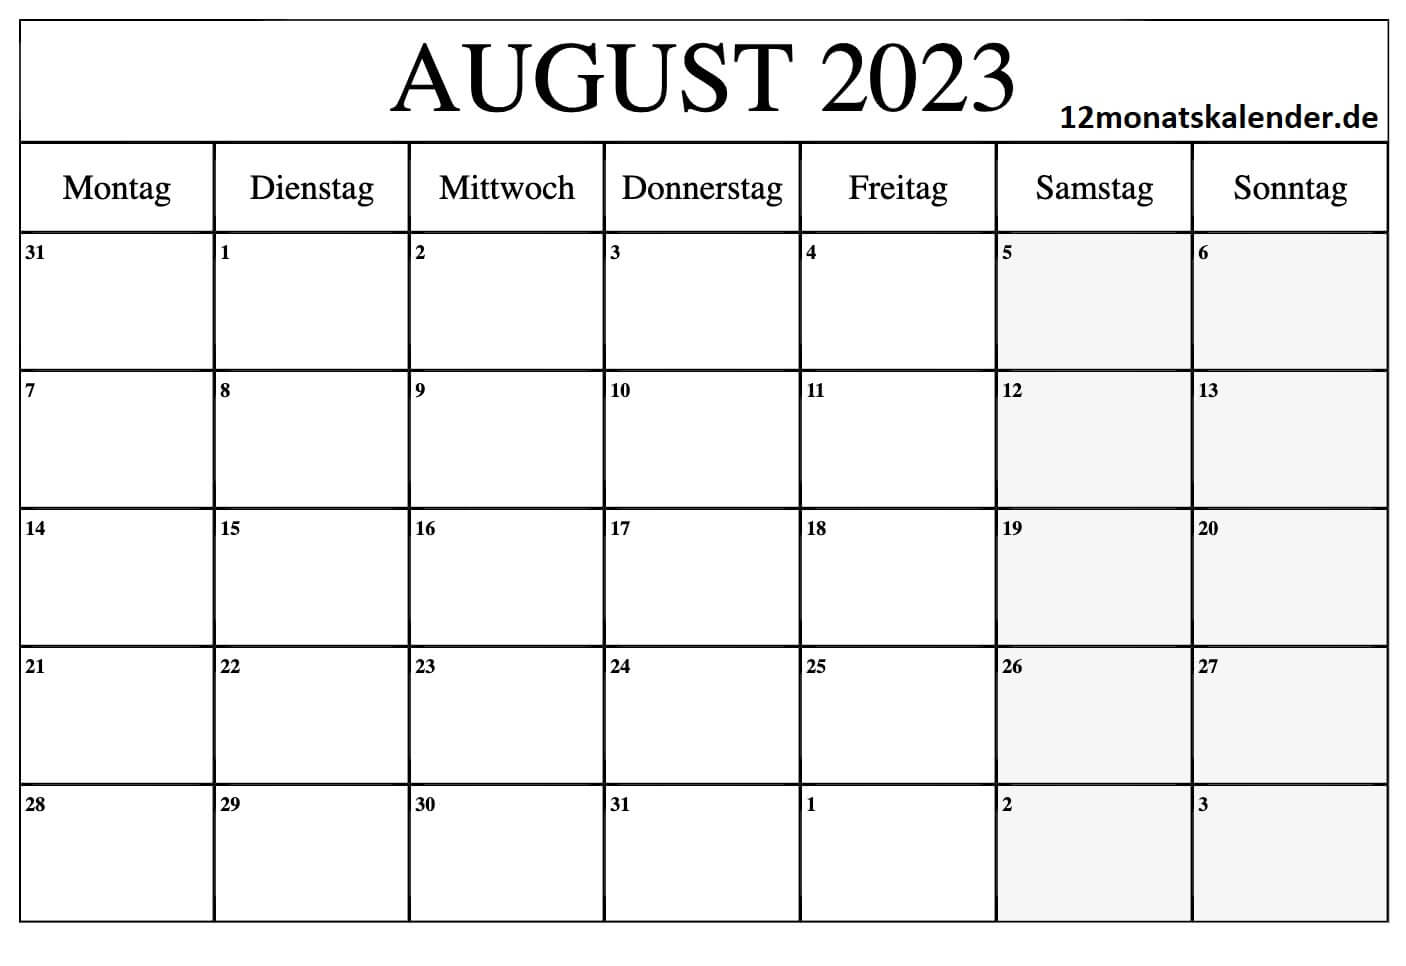 Behalten Sie den Überblick mit unserem kostenlosen August 2023 Kalender